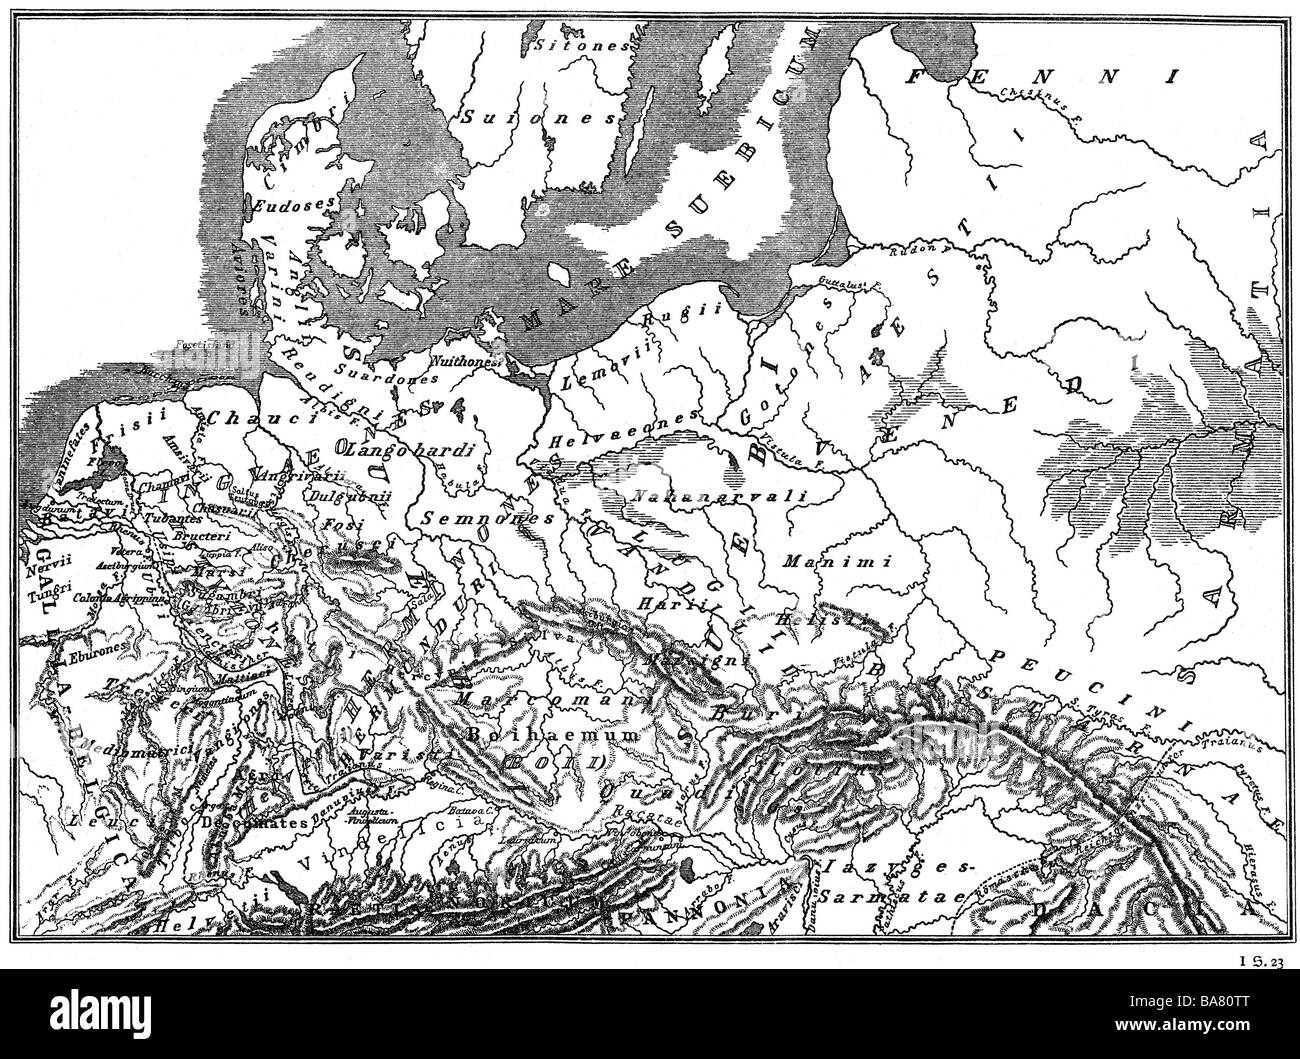 Kartografie, historische Karten, alte Welt, Germanien zur Zeit Tacitus, Ende des 1. Jahrhunderts, "Atlas antiquus" von Heinrich Kiepert, Berlin, 1861, Stockfoto